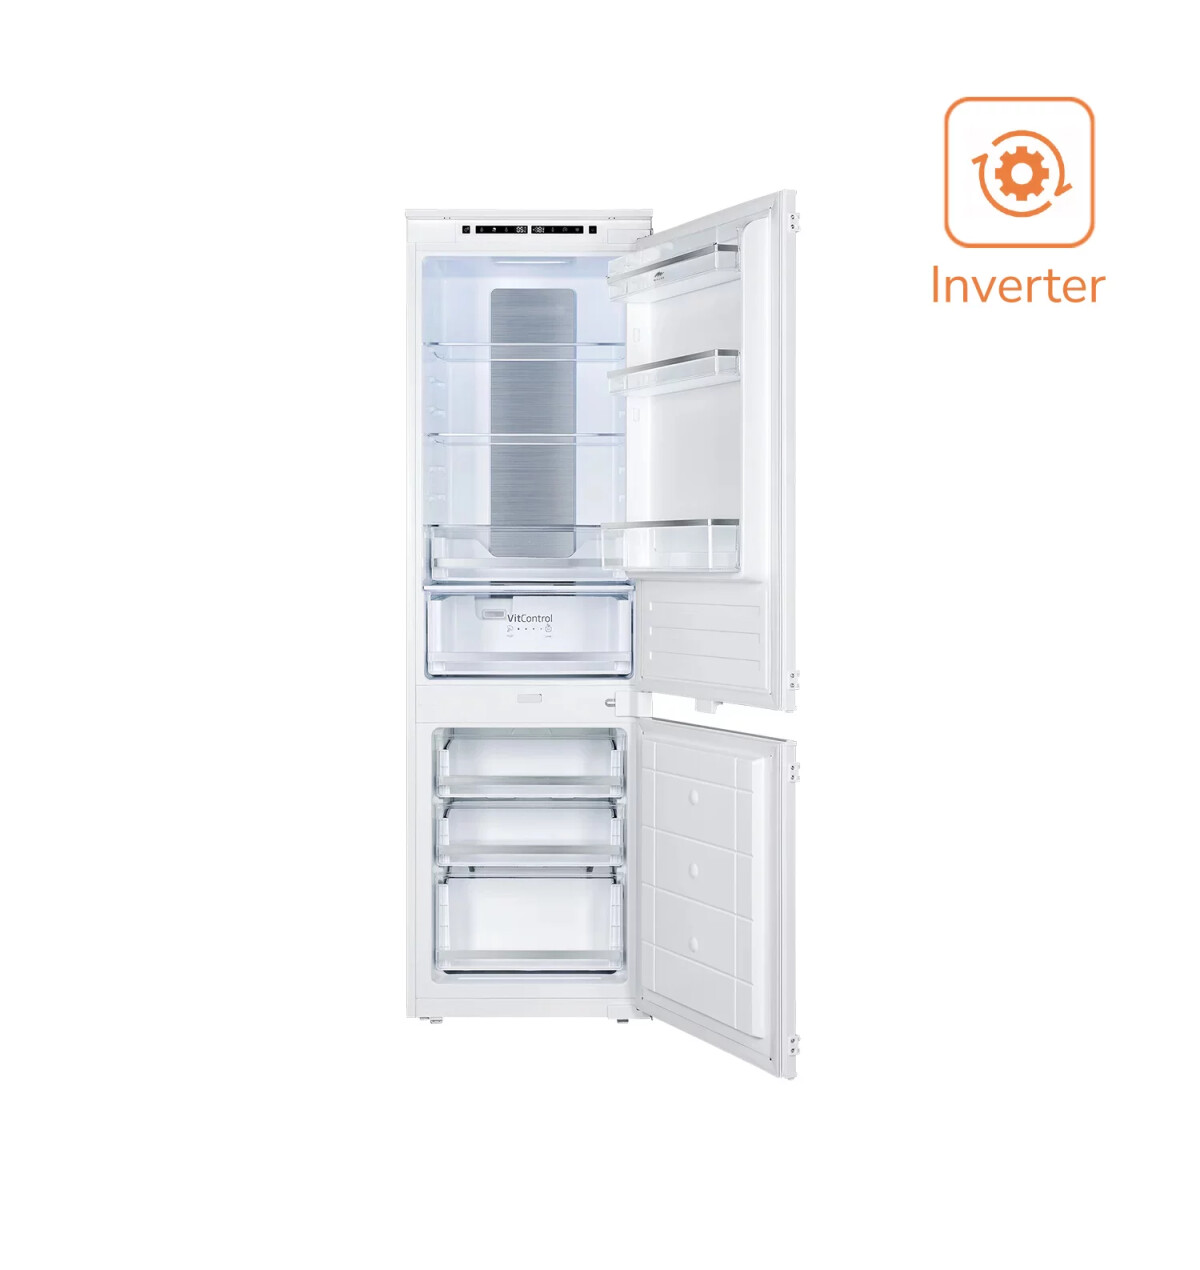 Встраиваемый двухкамерный холодильник MBI 177.3D